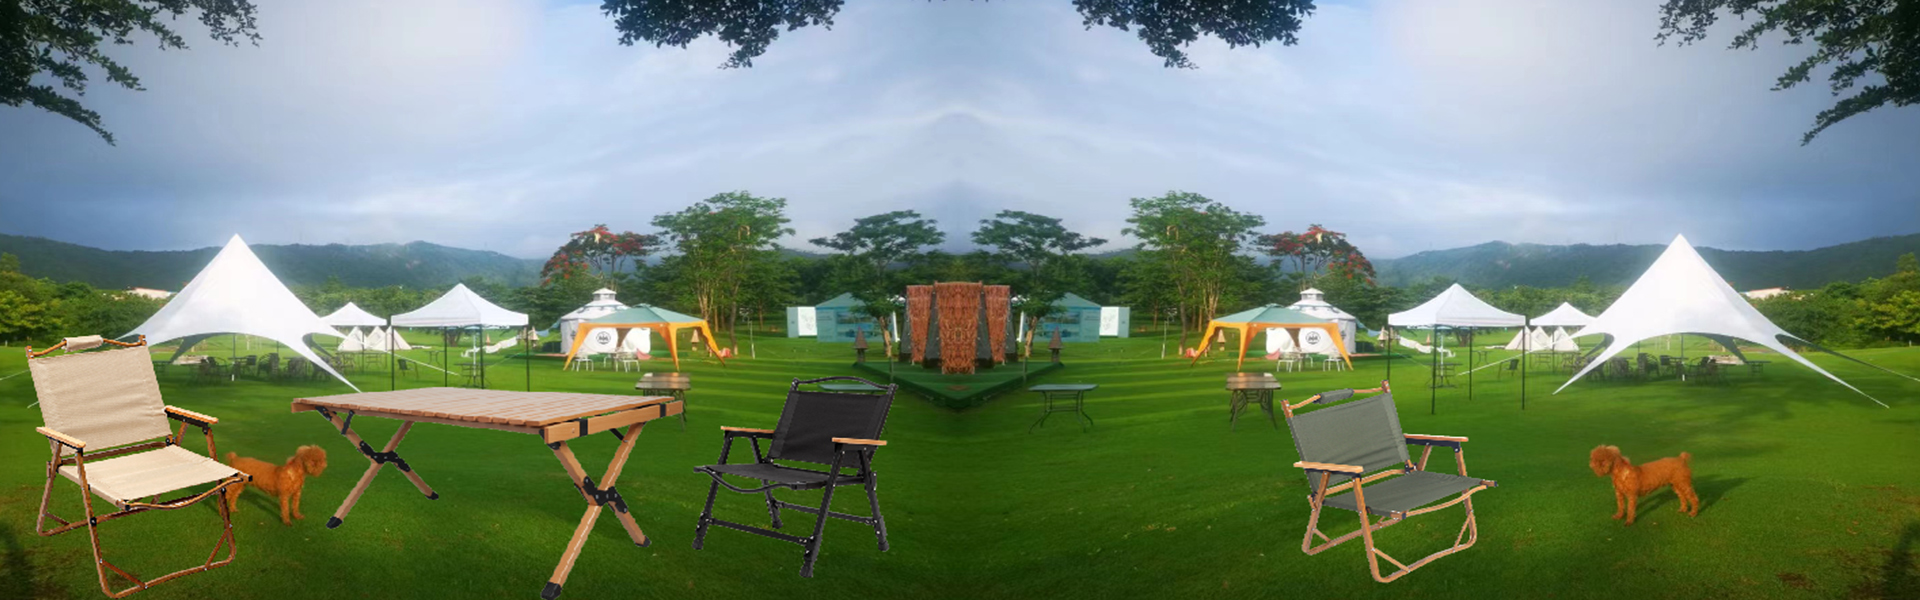 Camping Stuhl und Tisch